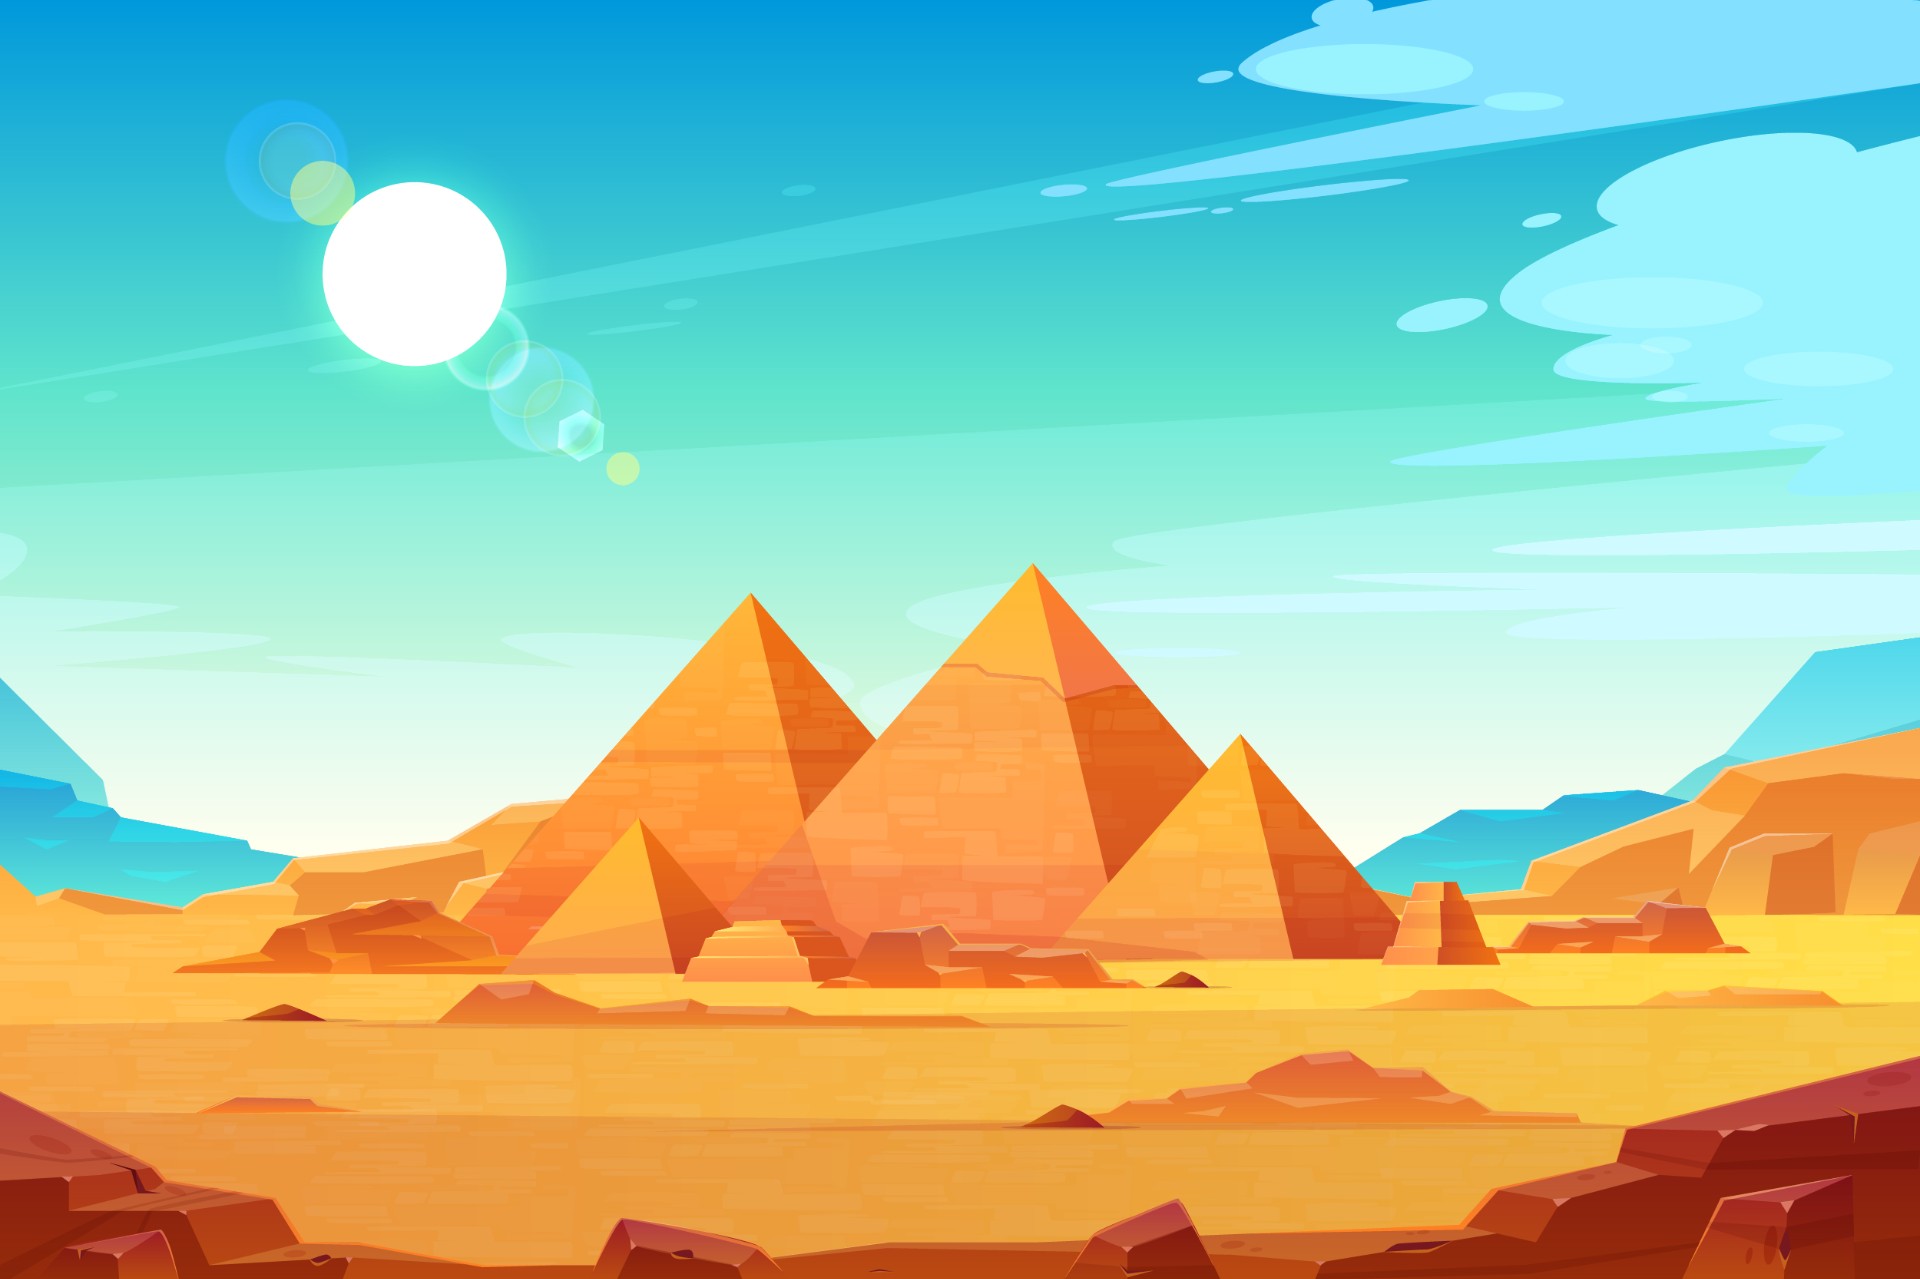 埃及法老金字塔高原景观插图0